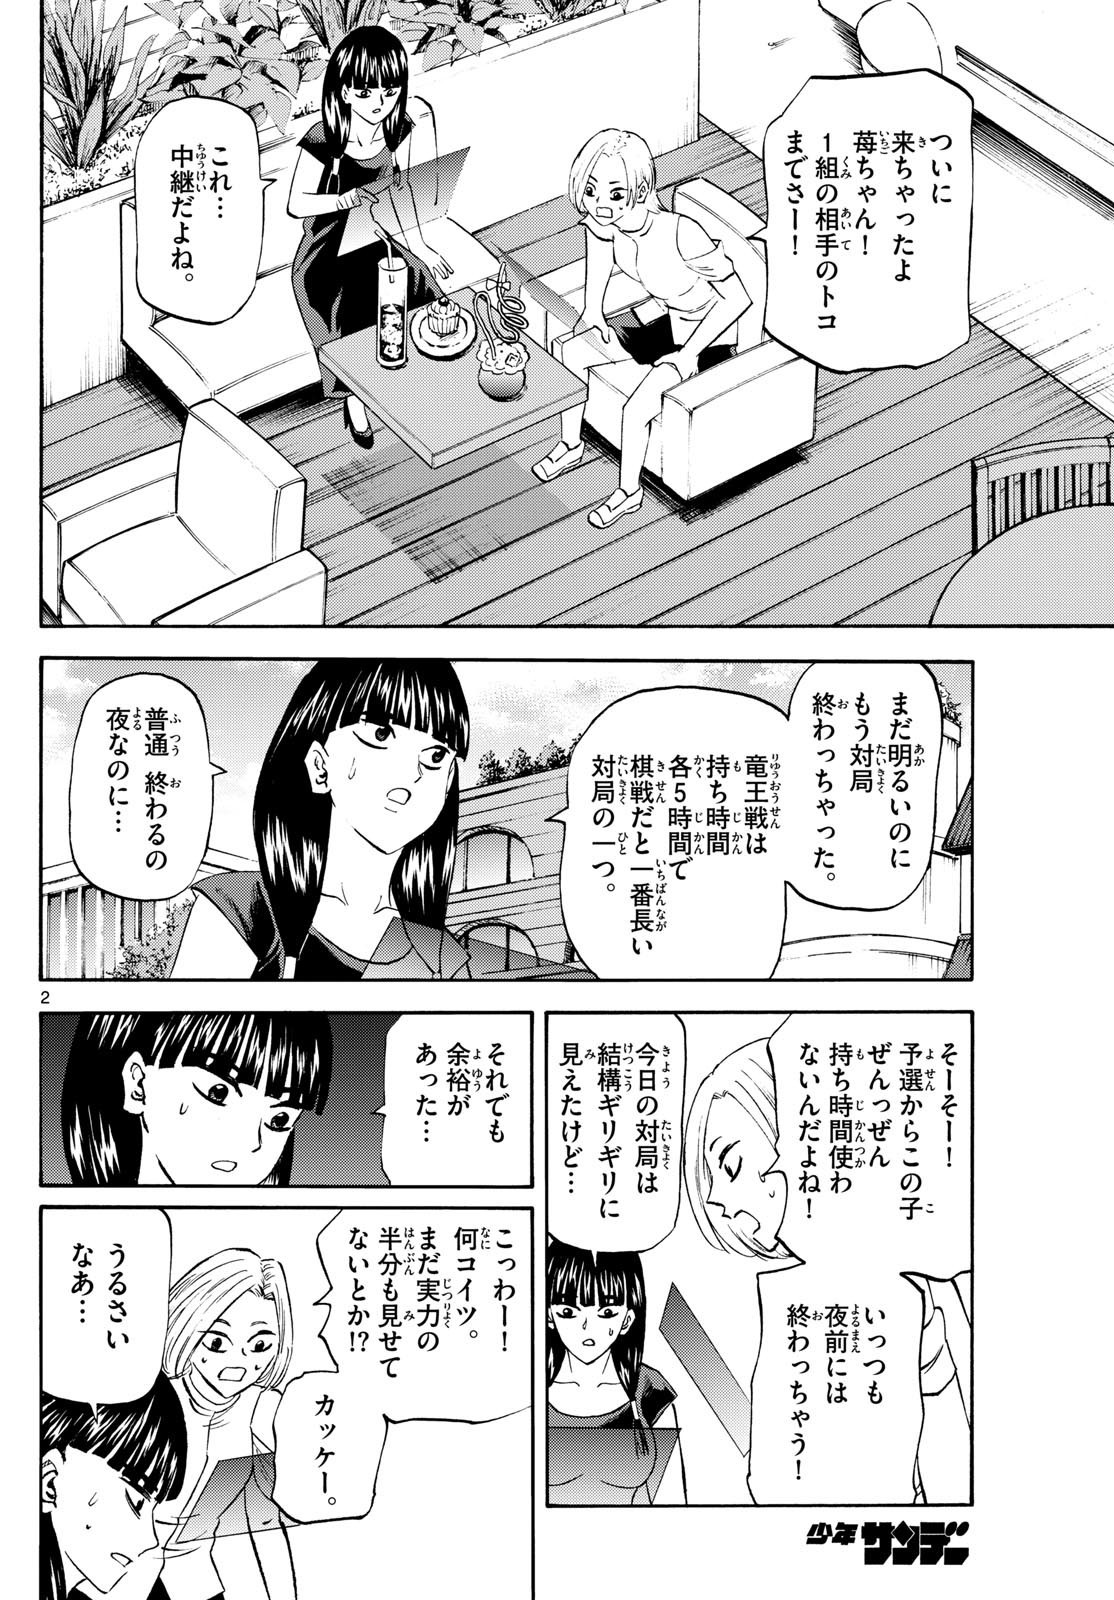 Tatsu to Ichigo - Chapter 199 - Page 2